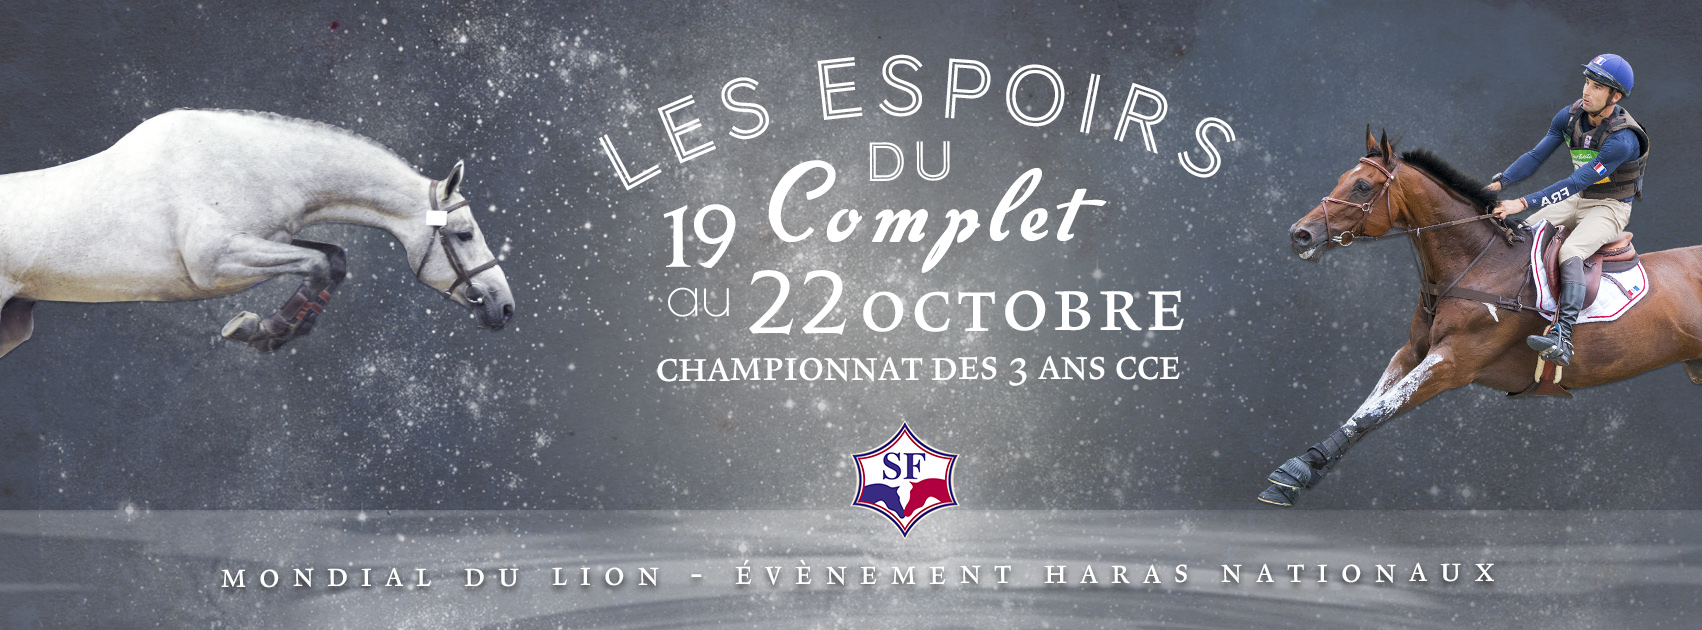 Résultats de la 1ère édition des "Espoirs du Complet" - Championnat de France des 3 ans CCE